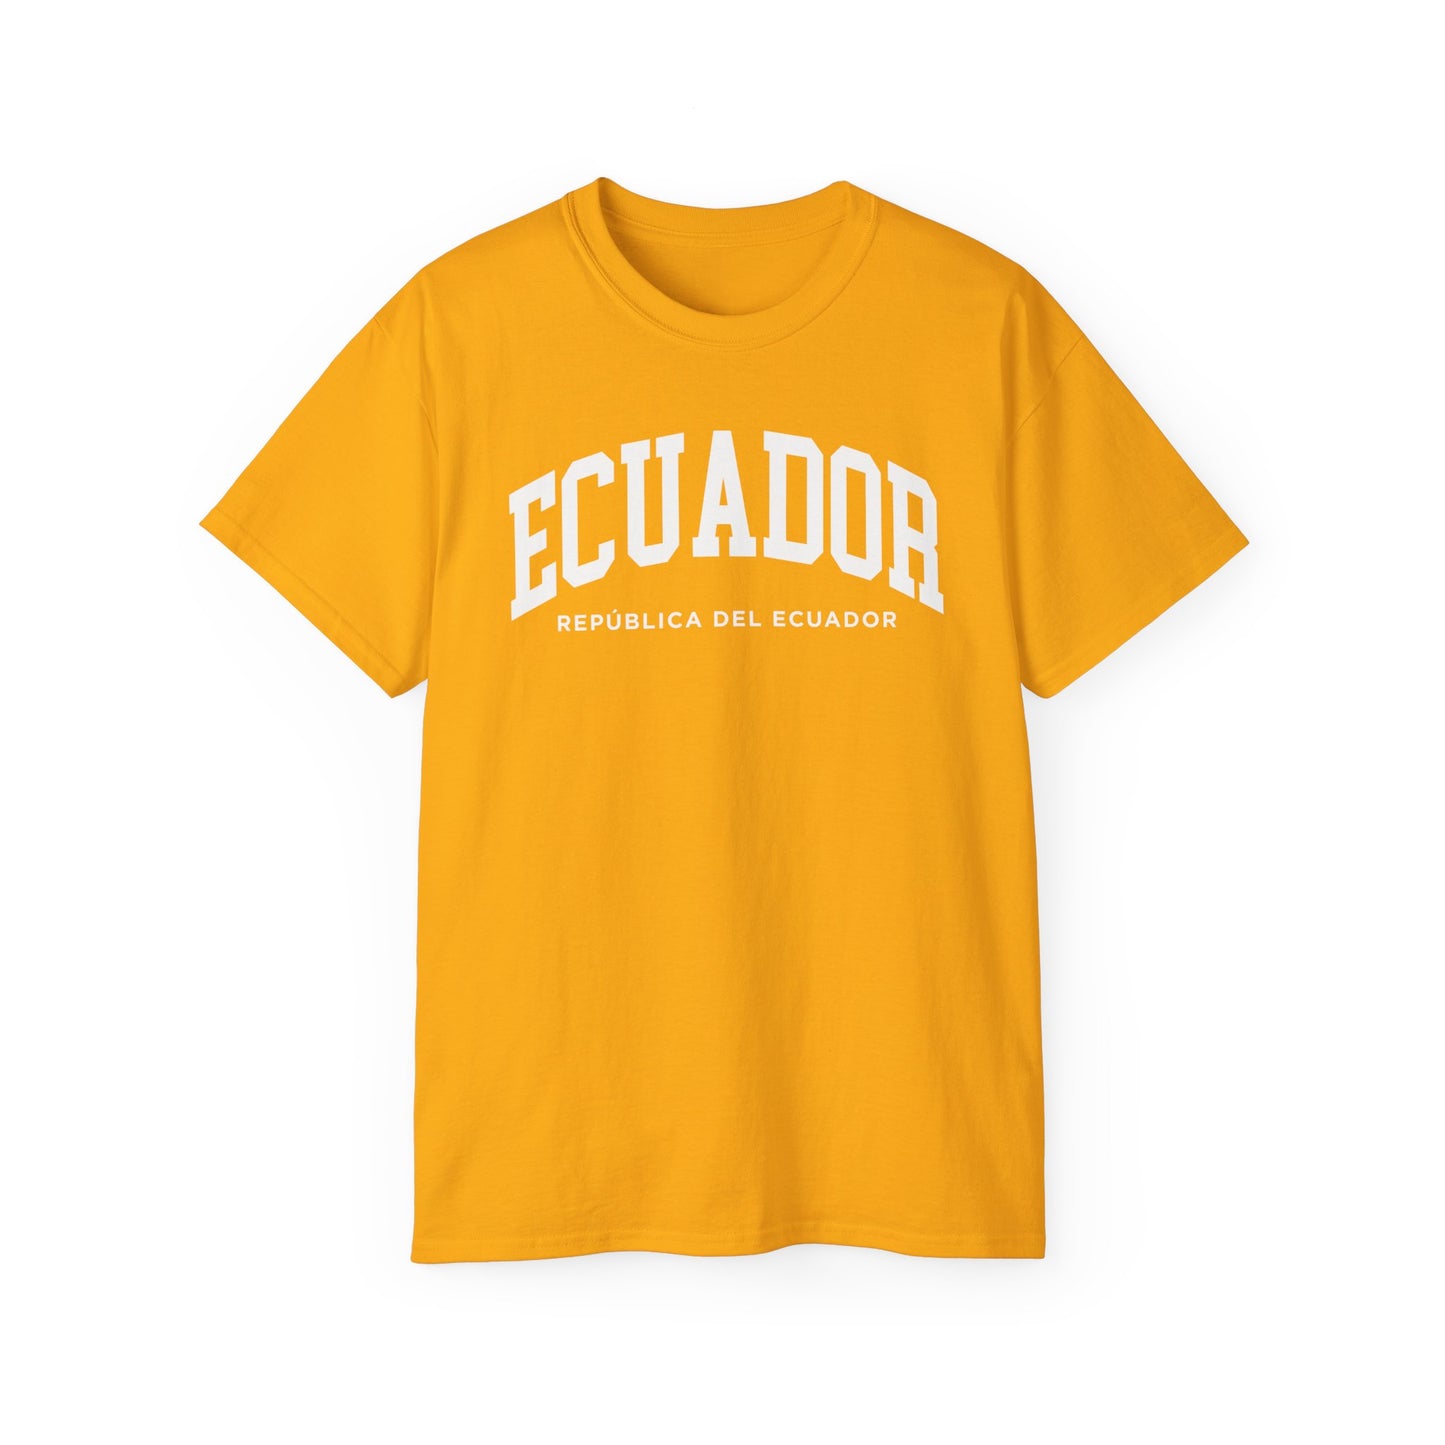 Ecuador Tee